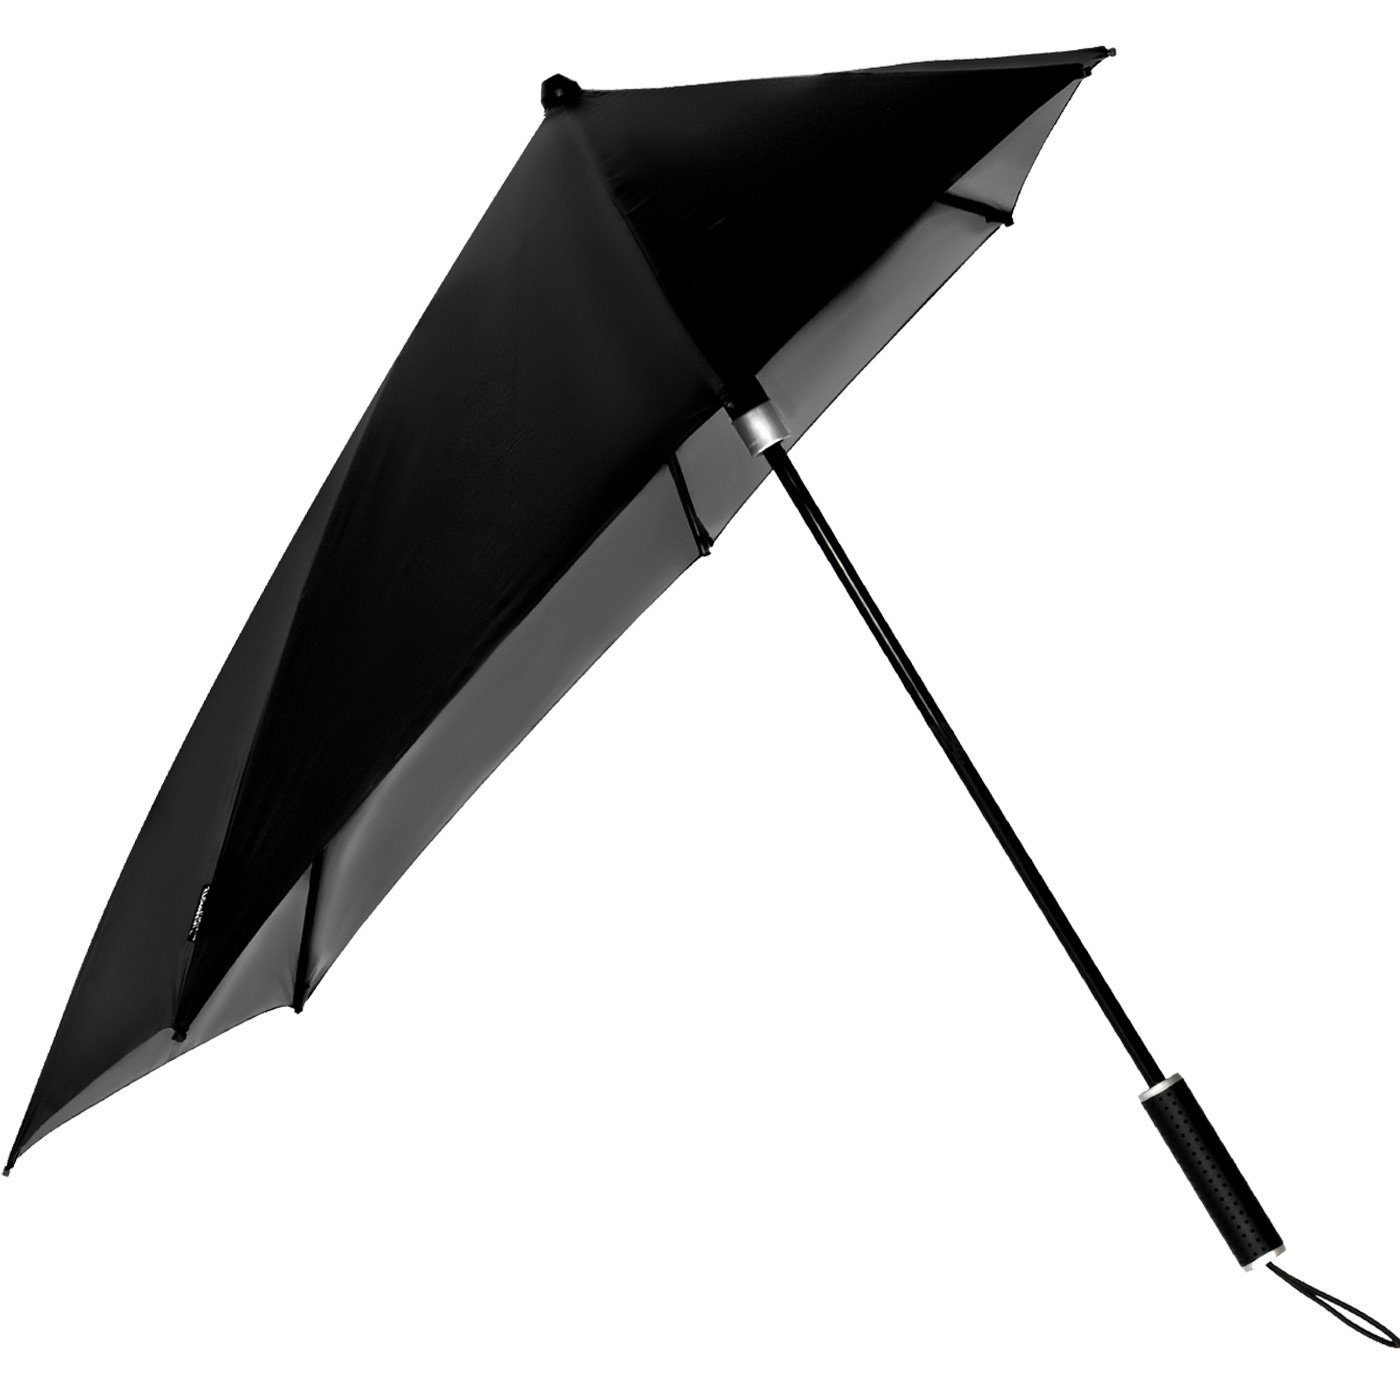 bis km/h in Stockregenschirm sich aus Form Wind, Impliva aerodynamischer STORMaxi schwarz-nickel den zu Schirm hält durch dreht Sturmschirm Metallic, seine besondere 80 der